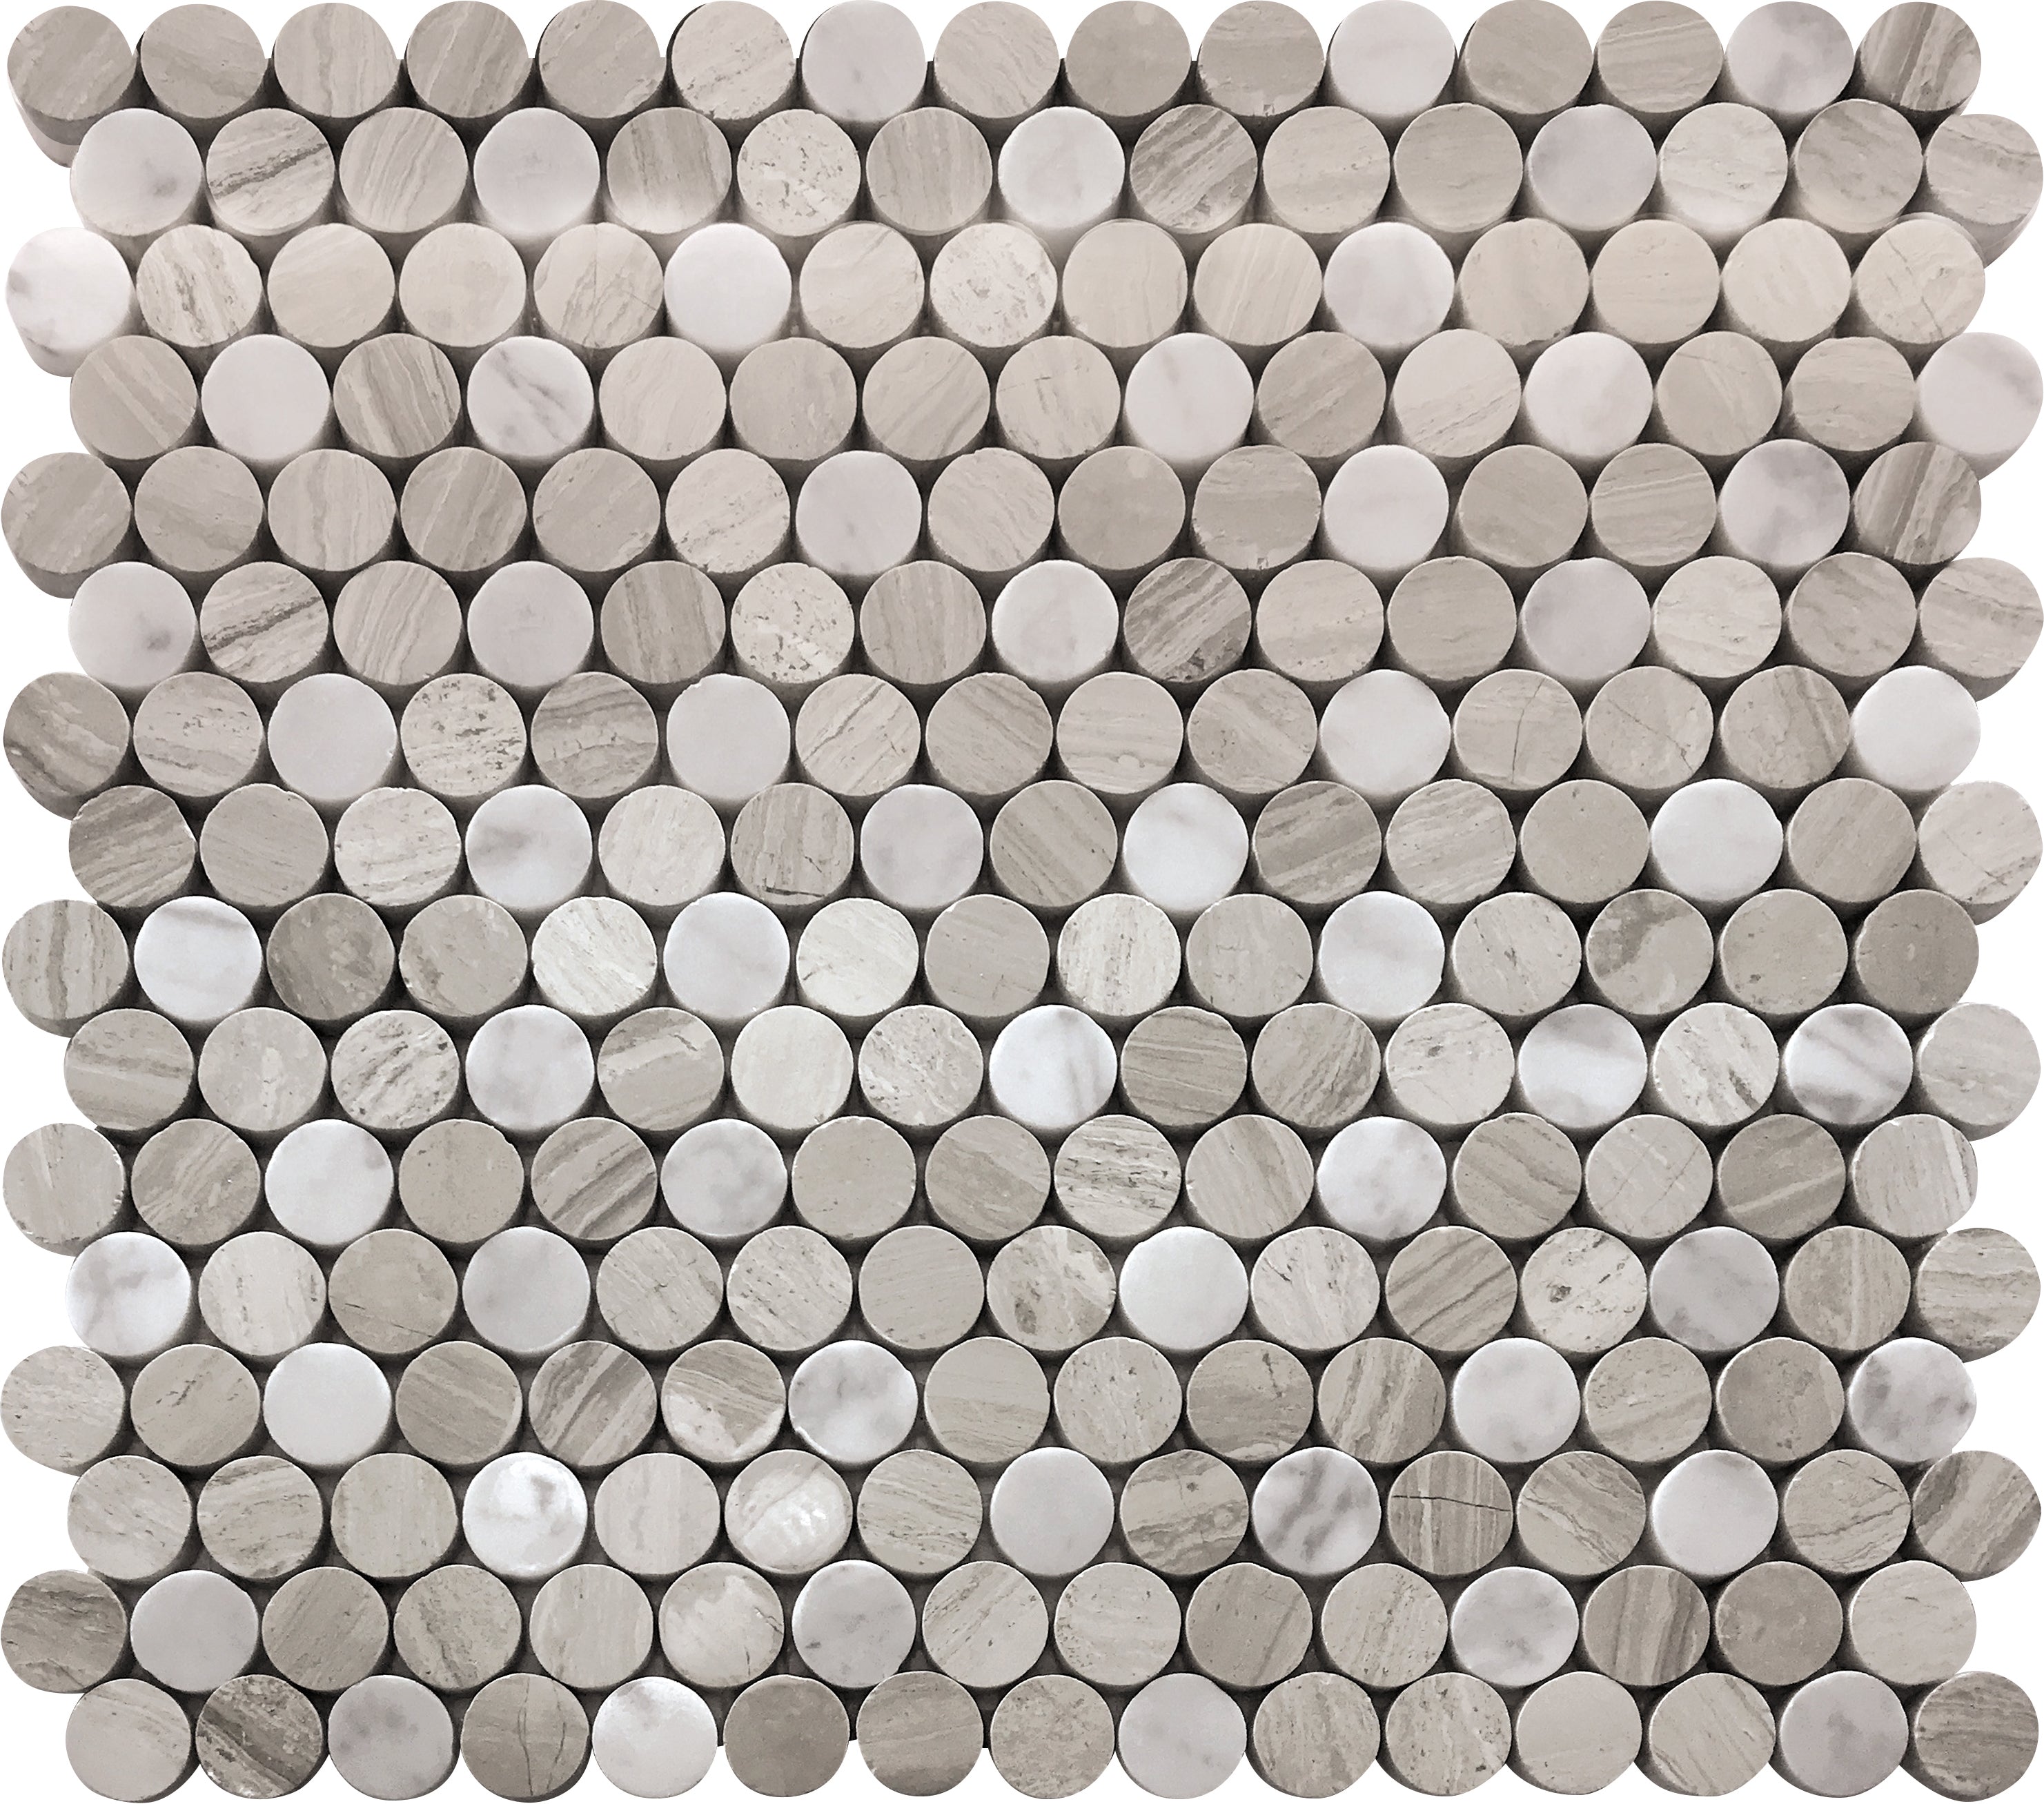 mir natural line savannah hemingway circle wall and floor mosaic distributed by surface group natural materials